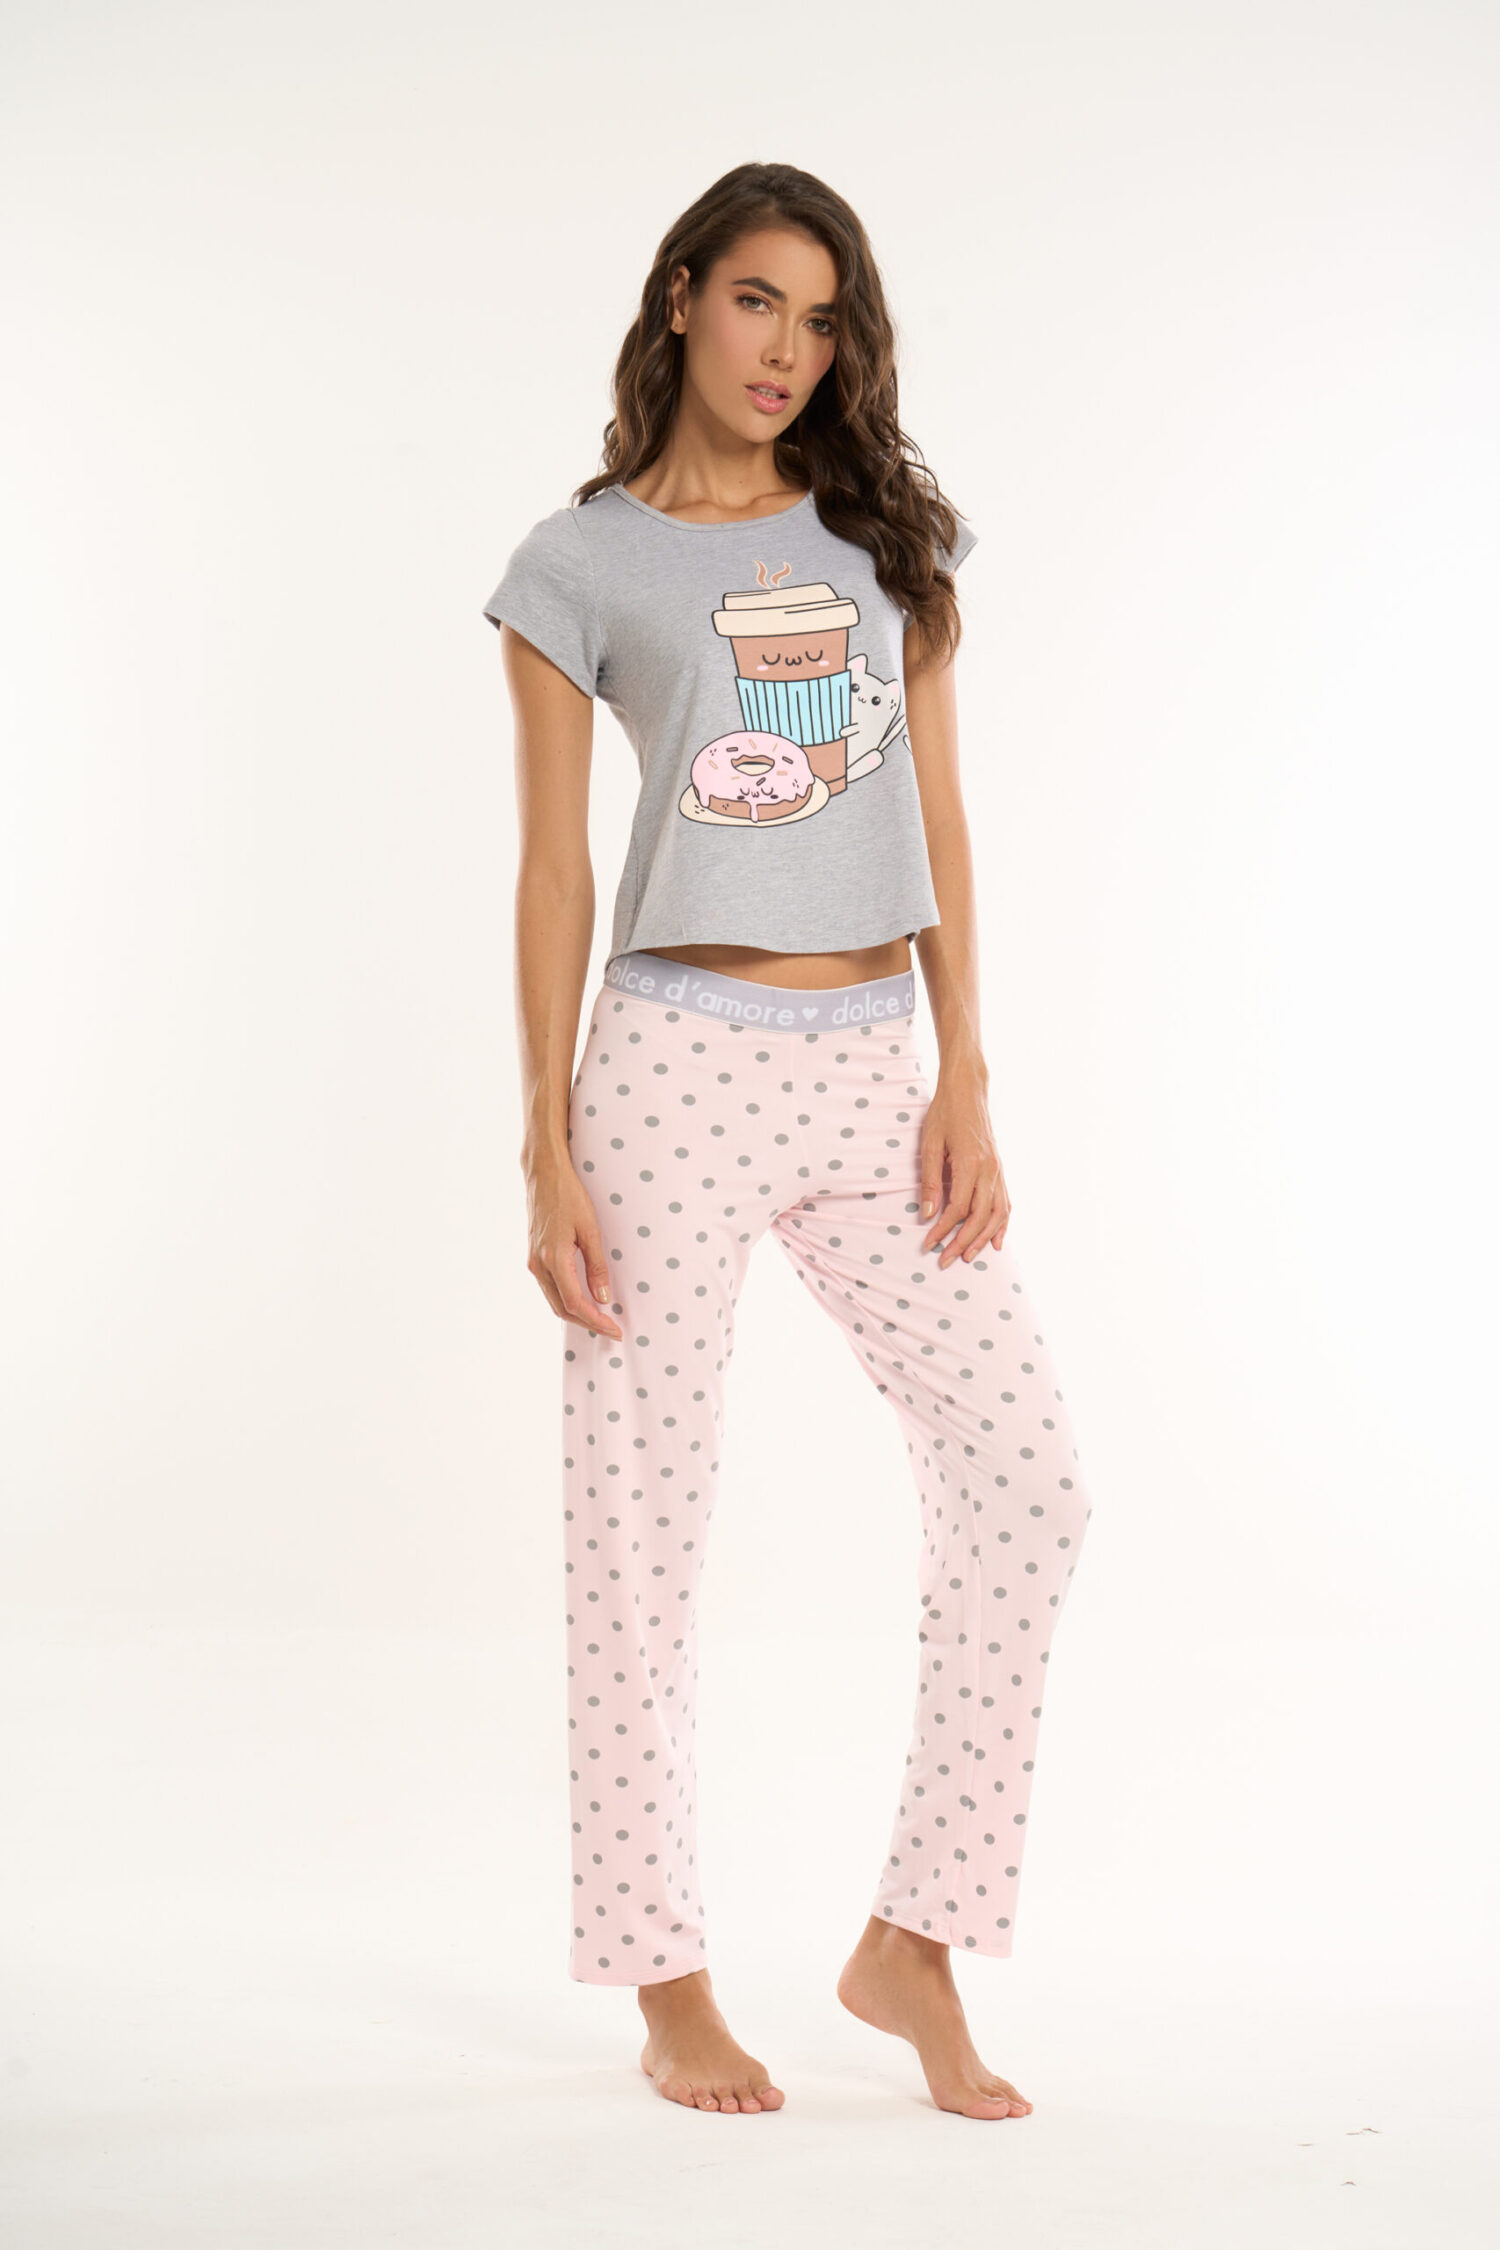 Imagen del producto: Conjunto pantalón elástico rosado bolas gris camisa manga gris coffe-cat